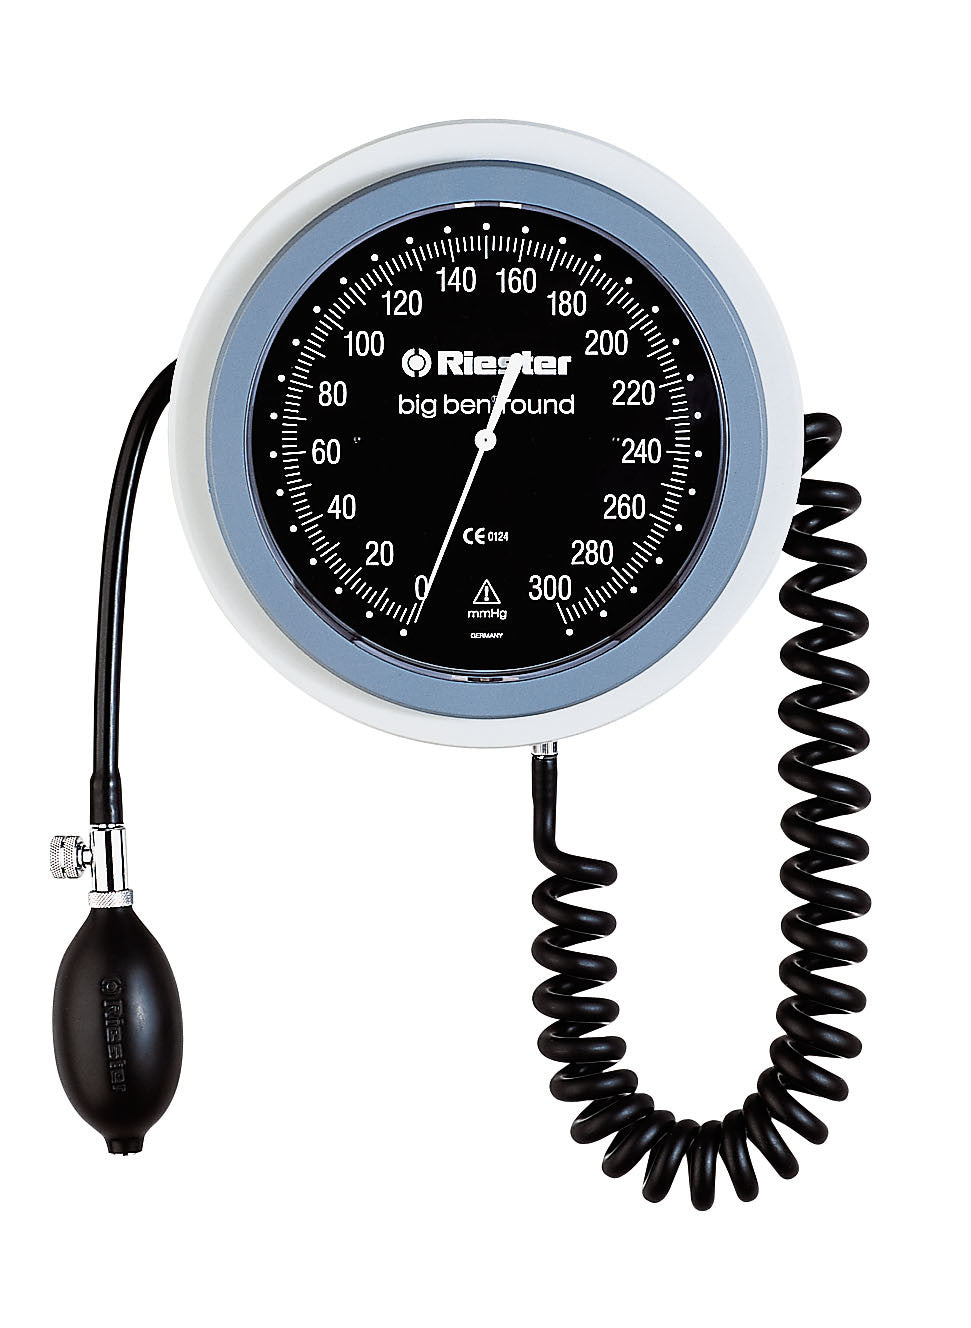 Esfigmomanómetro Riester big ben® De Pared Redondo / brazalete velcro adultos 1459 - RIESTER MEXICO